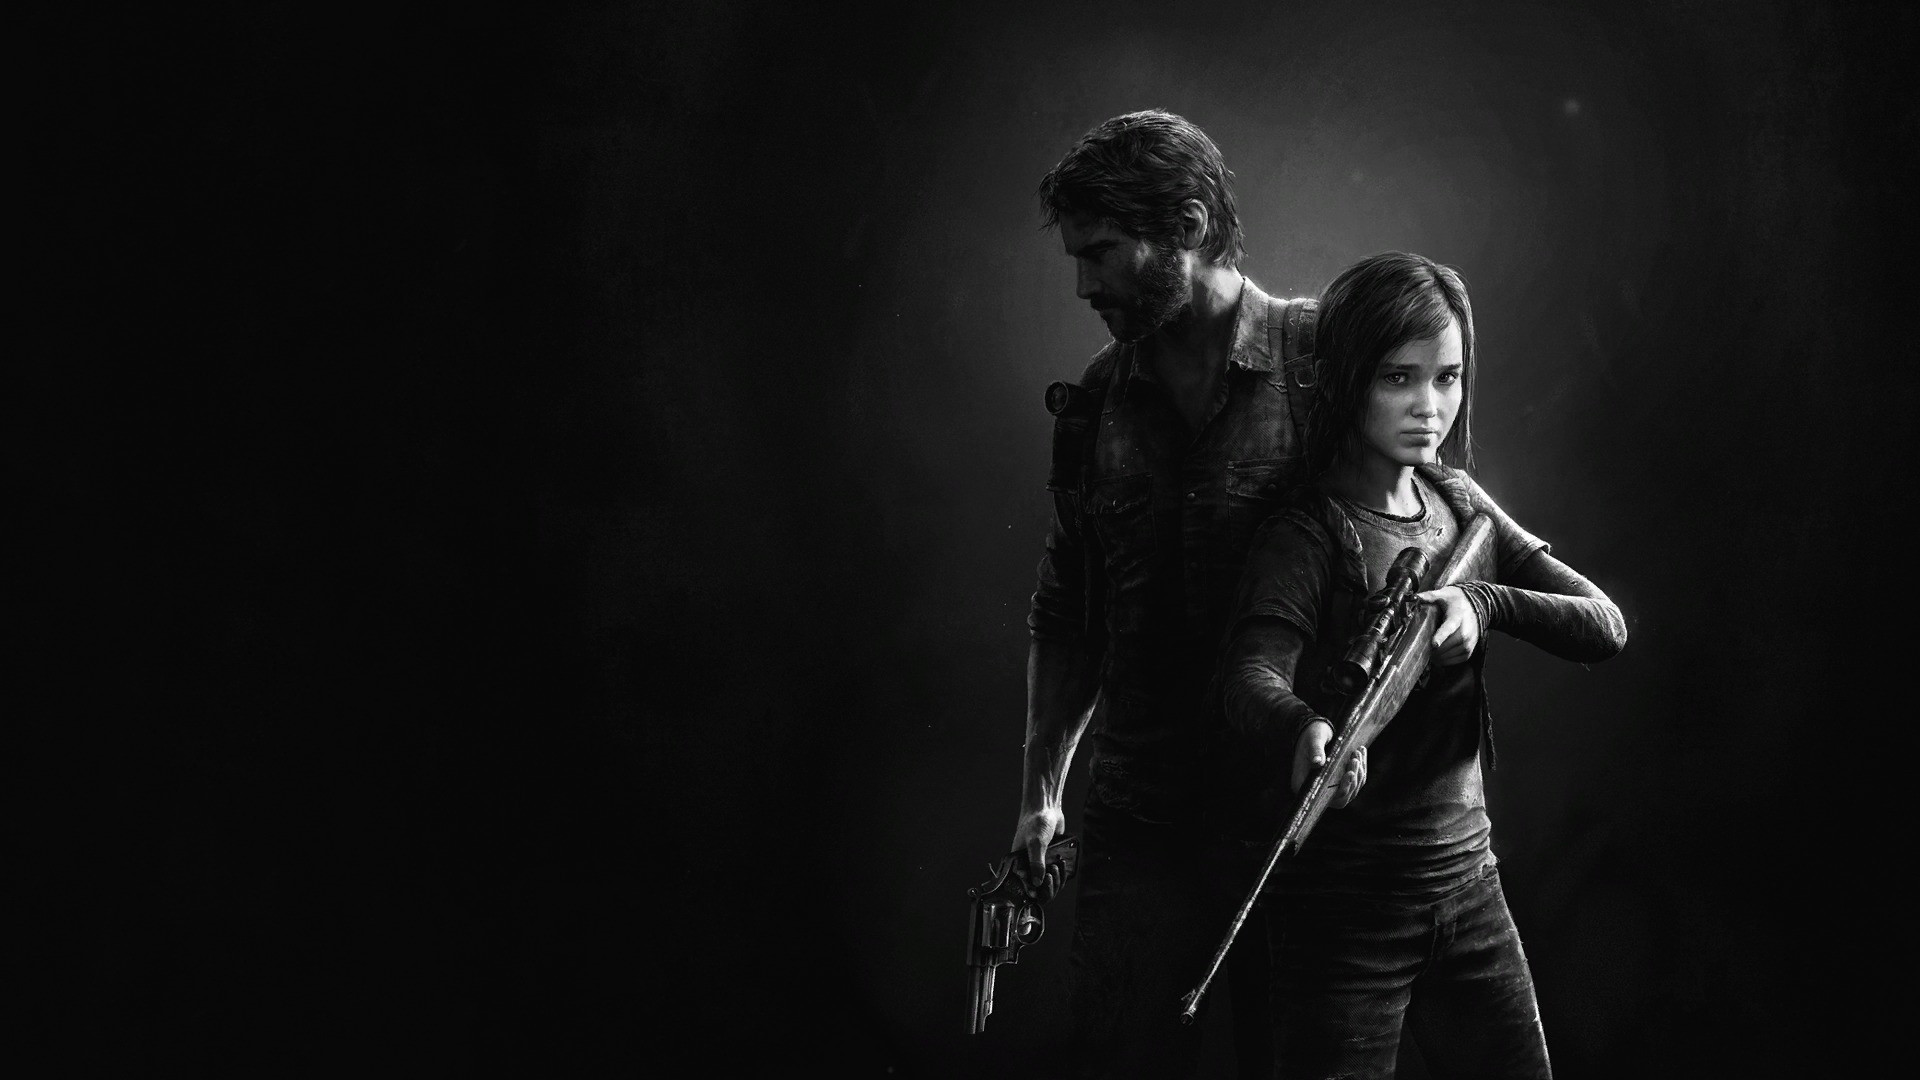 Los mejores fondos de pantalla de The Last Of Us para la pantalla del teléfono